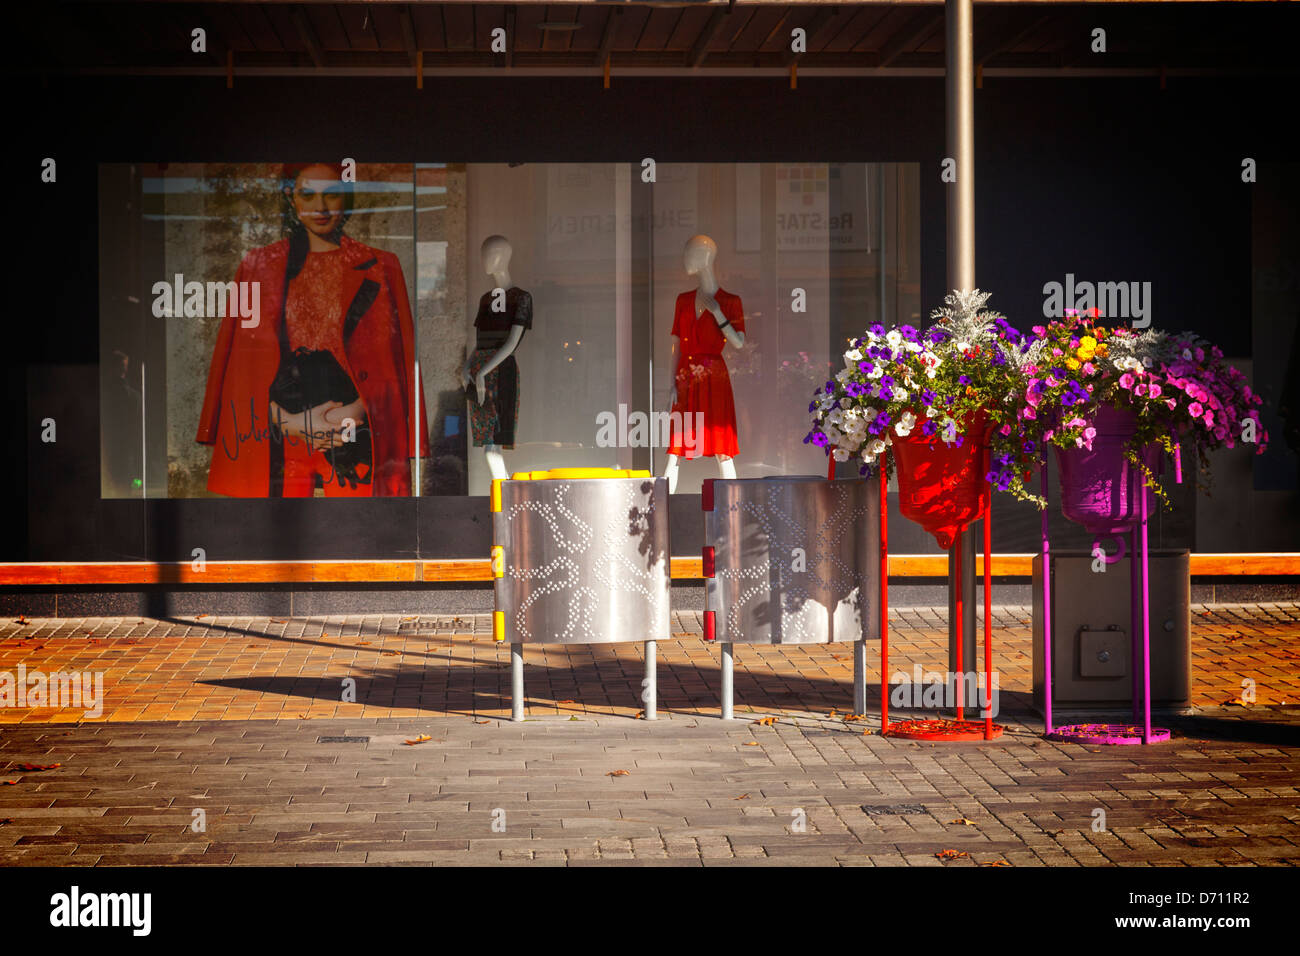 Tienda Escaparate y adorno floral - un escaparate Foto de stock